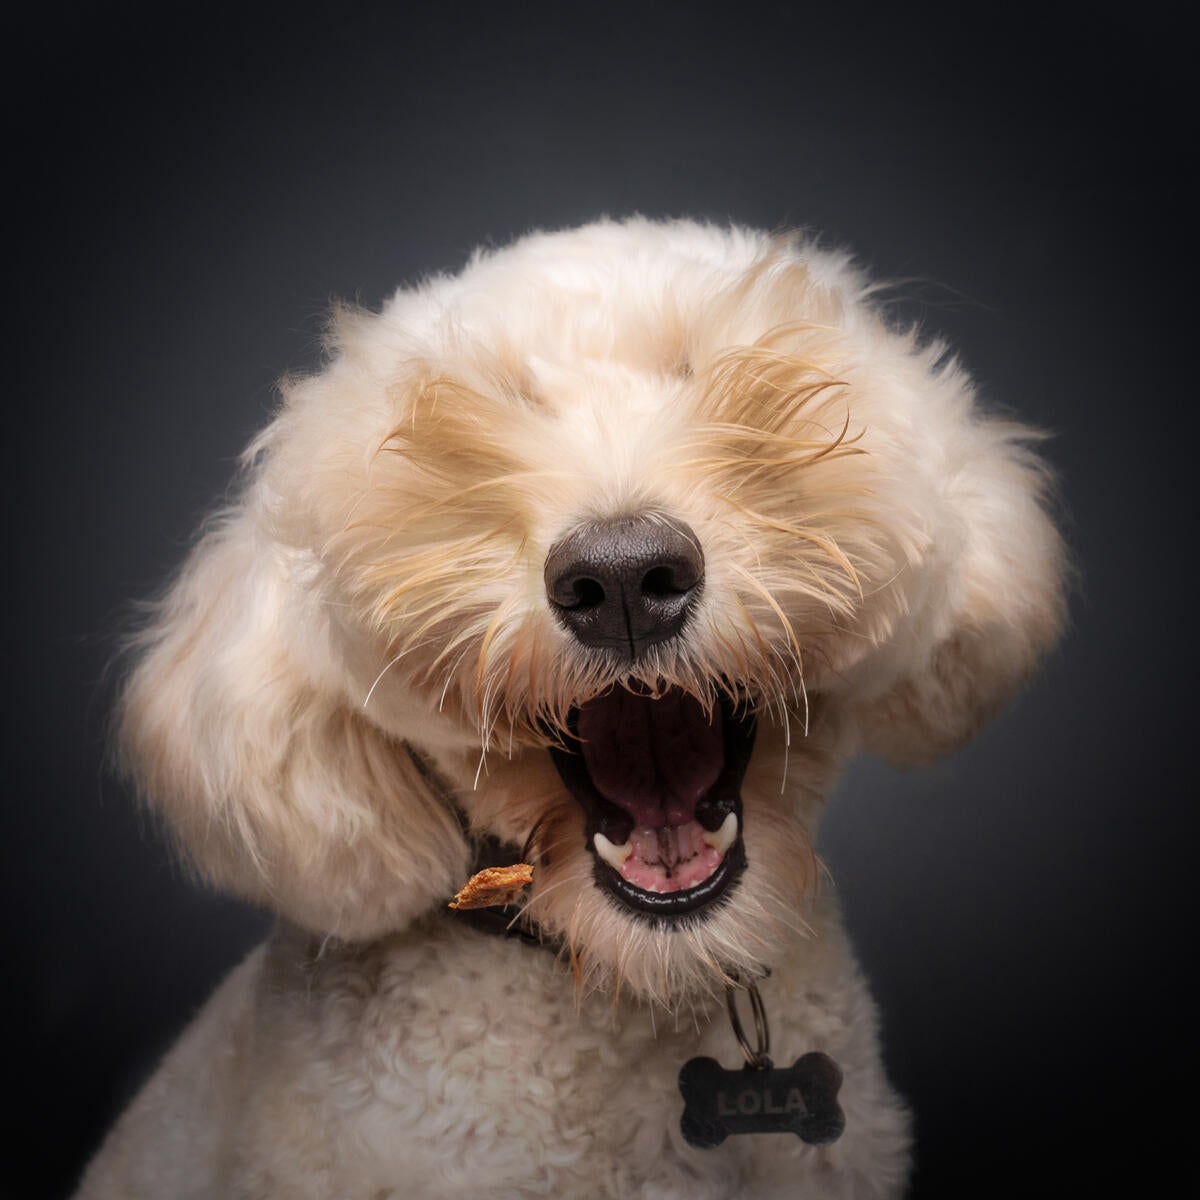 Cachorro com a boca aberta sem aparecer os olhos por causa dos pelos excessivos